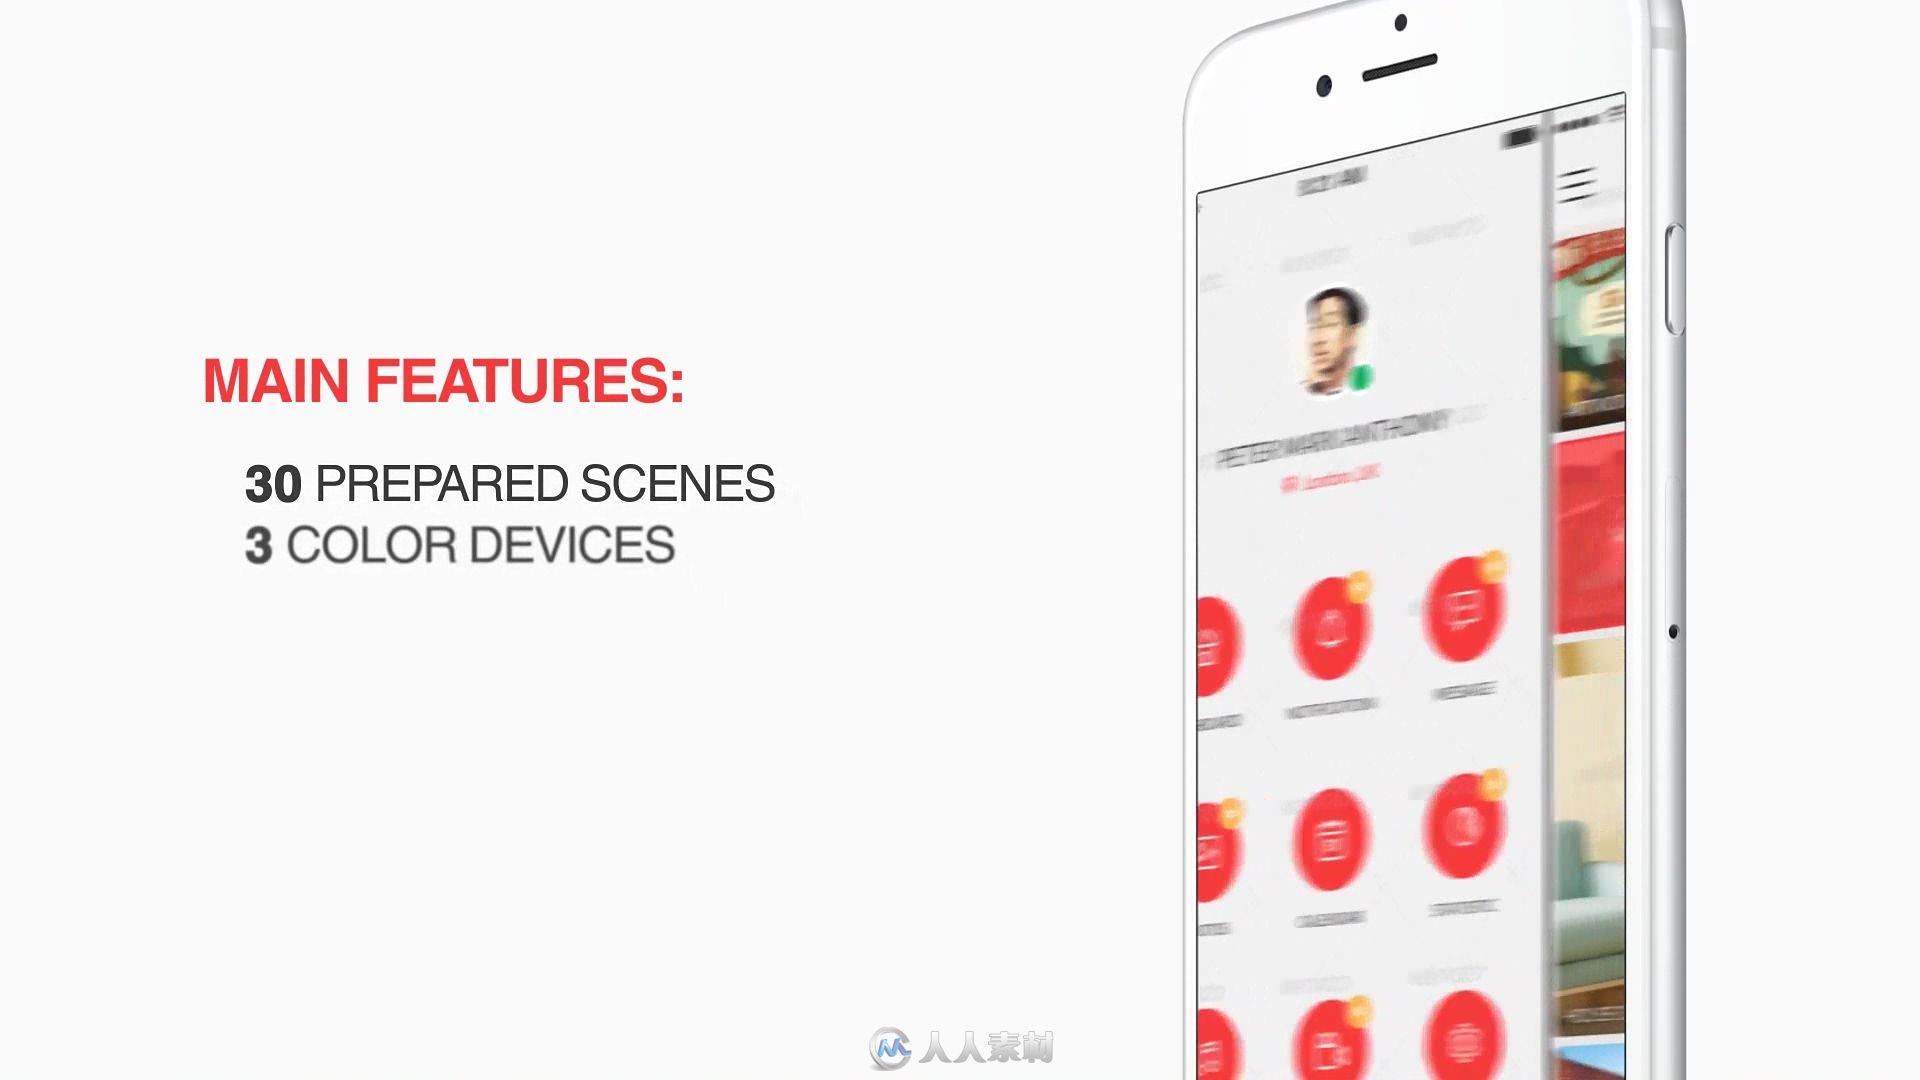 手机移动APP应用程序展示动画产品宣传AE模板 Videohive App Promo Kit